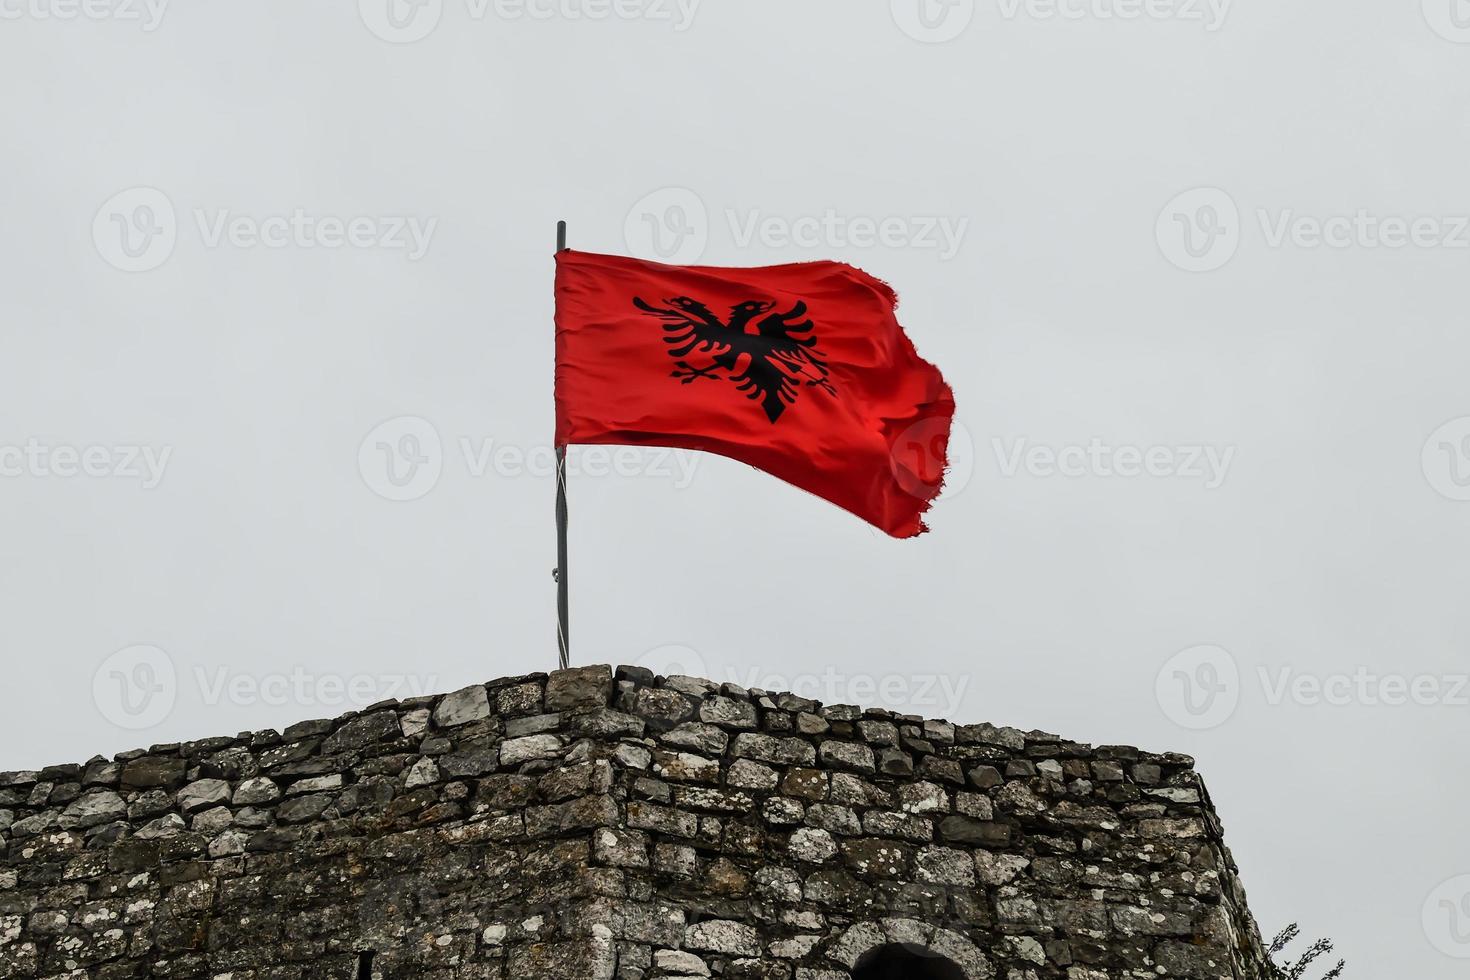 bandeira albanesa no antigo castelo em chokder foto